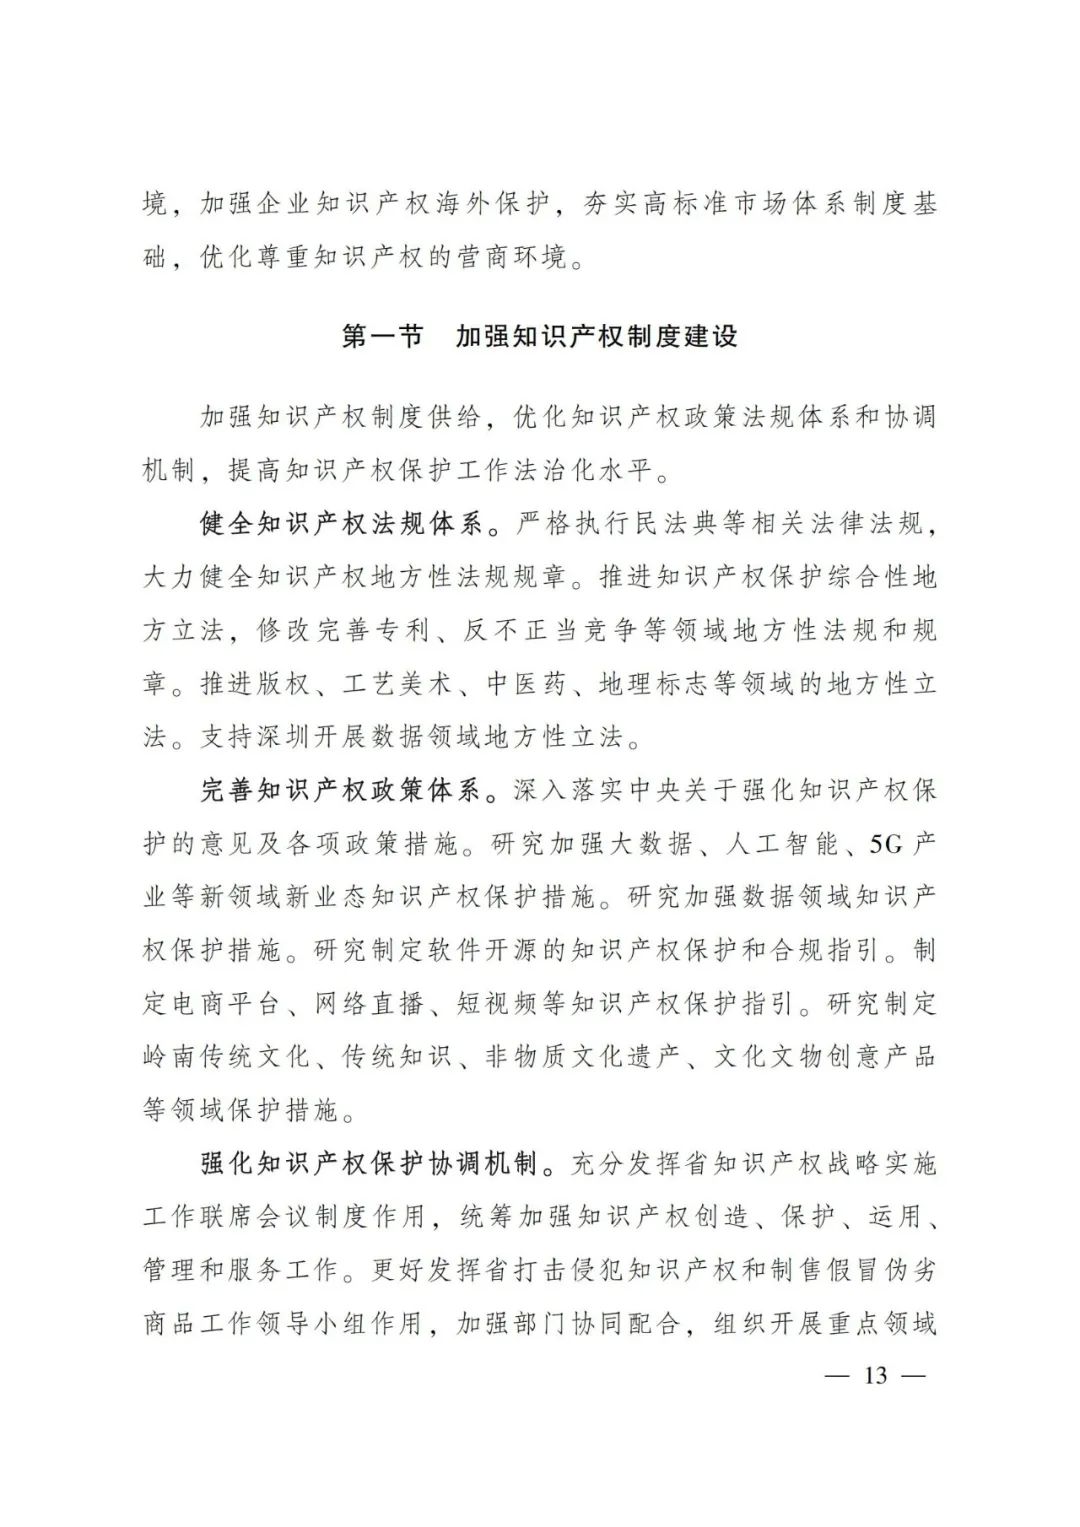 《广东省知识产权保护和运用“十四五”规划》全文发布！